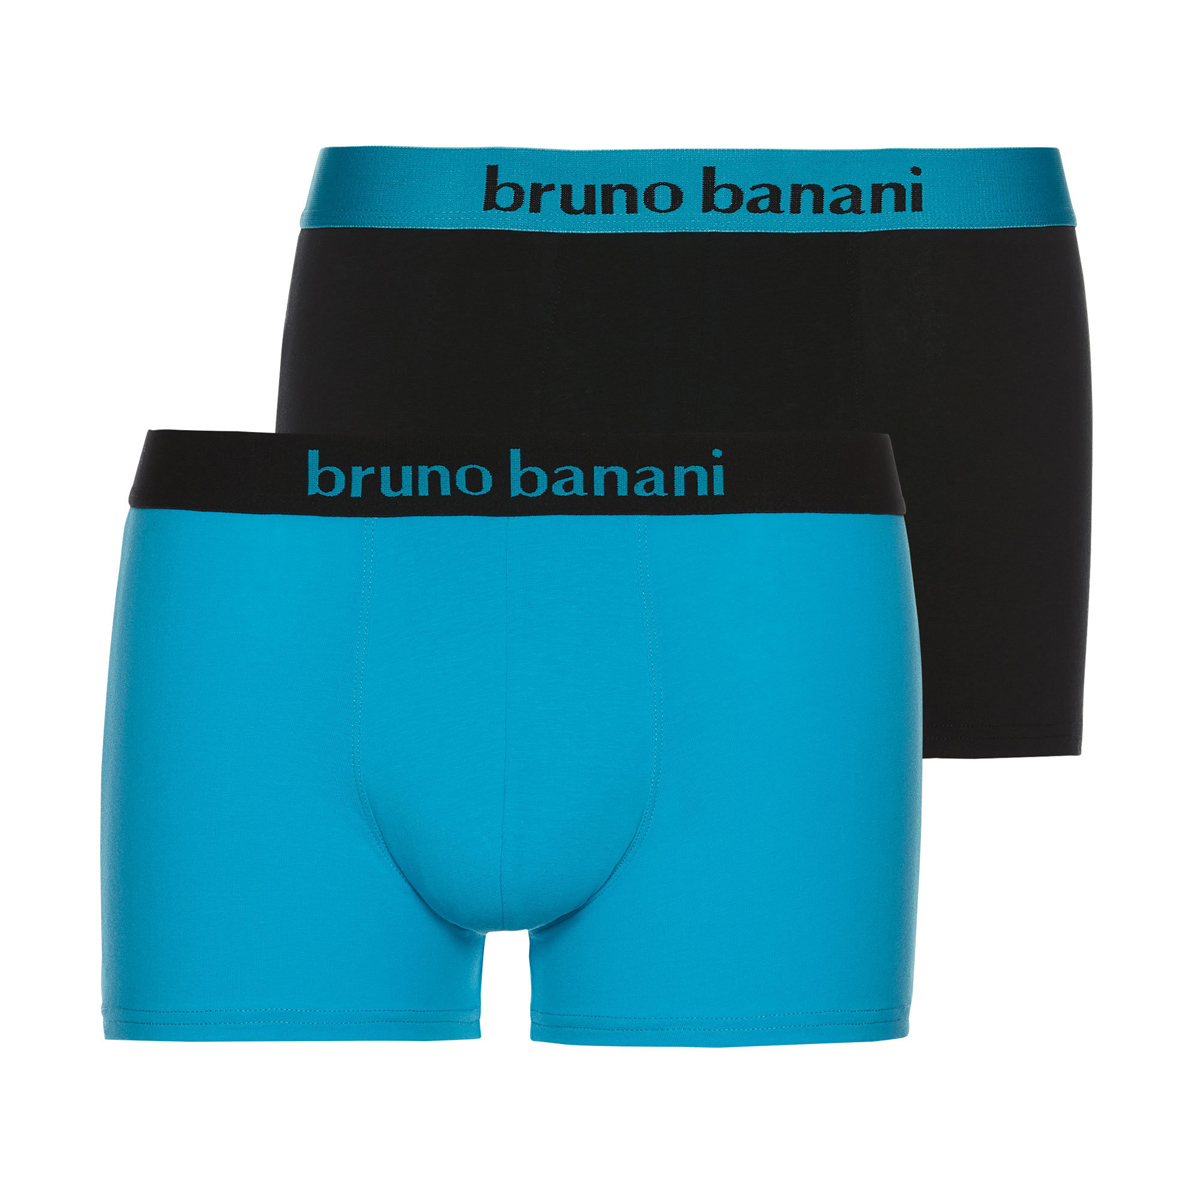 bruno banani boxershort boxer short herren NEWCOMER pink navy orange 2 Pack 